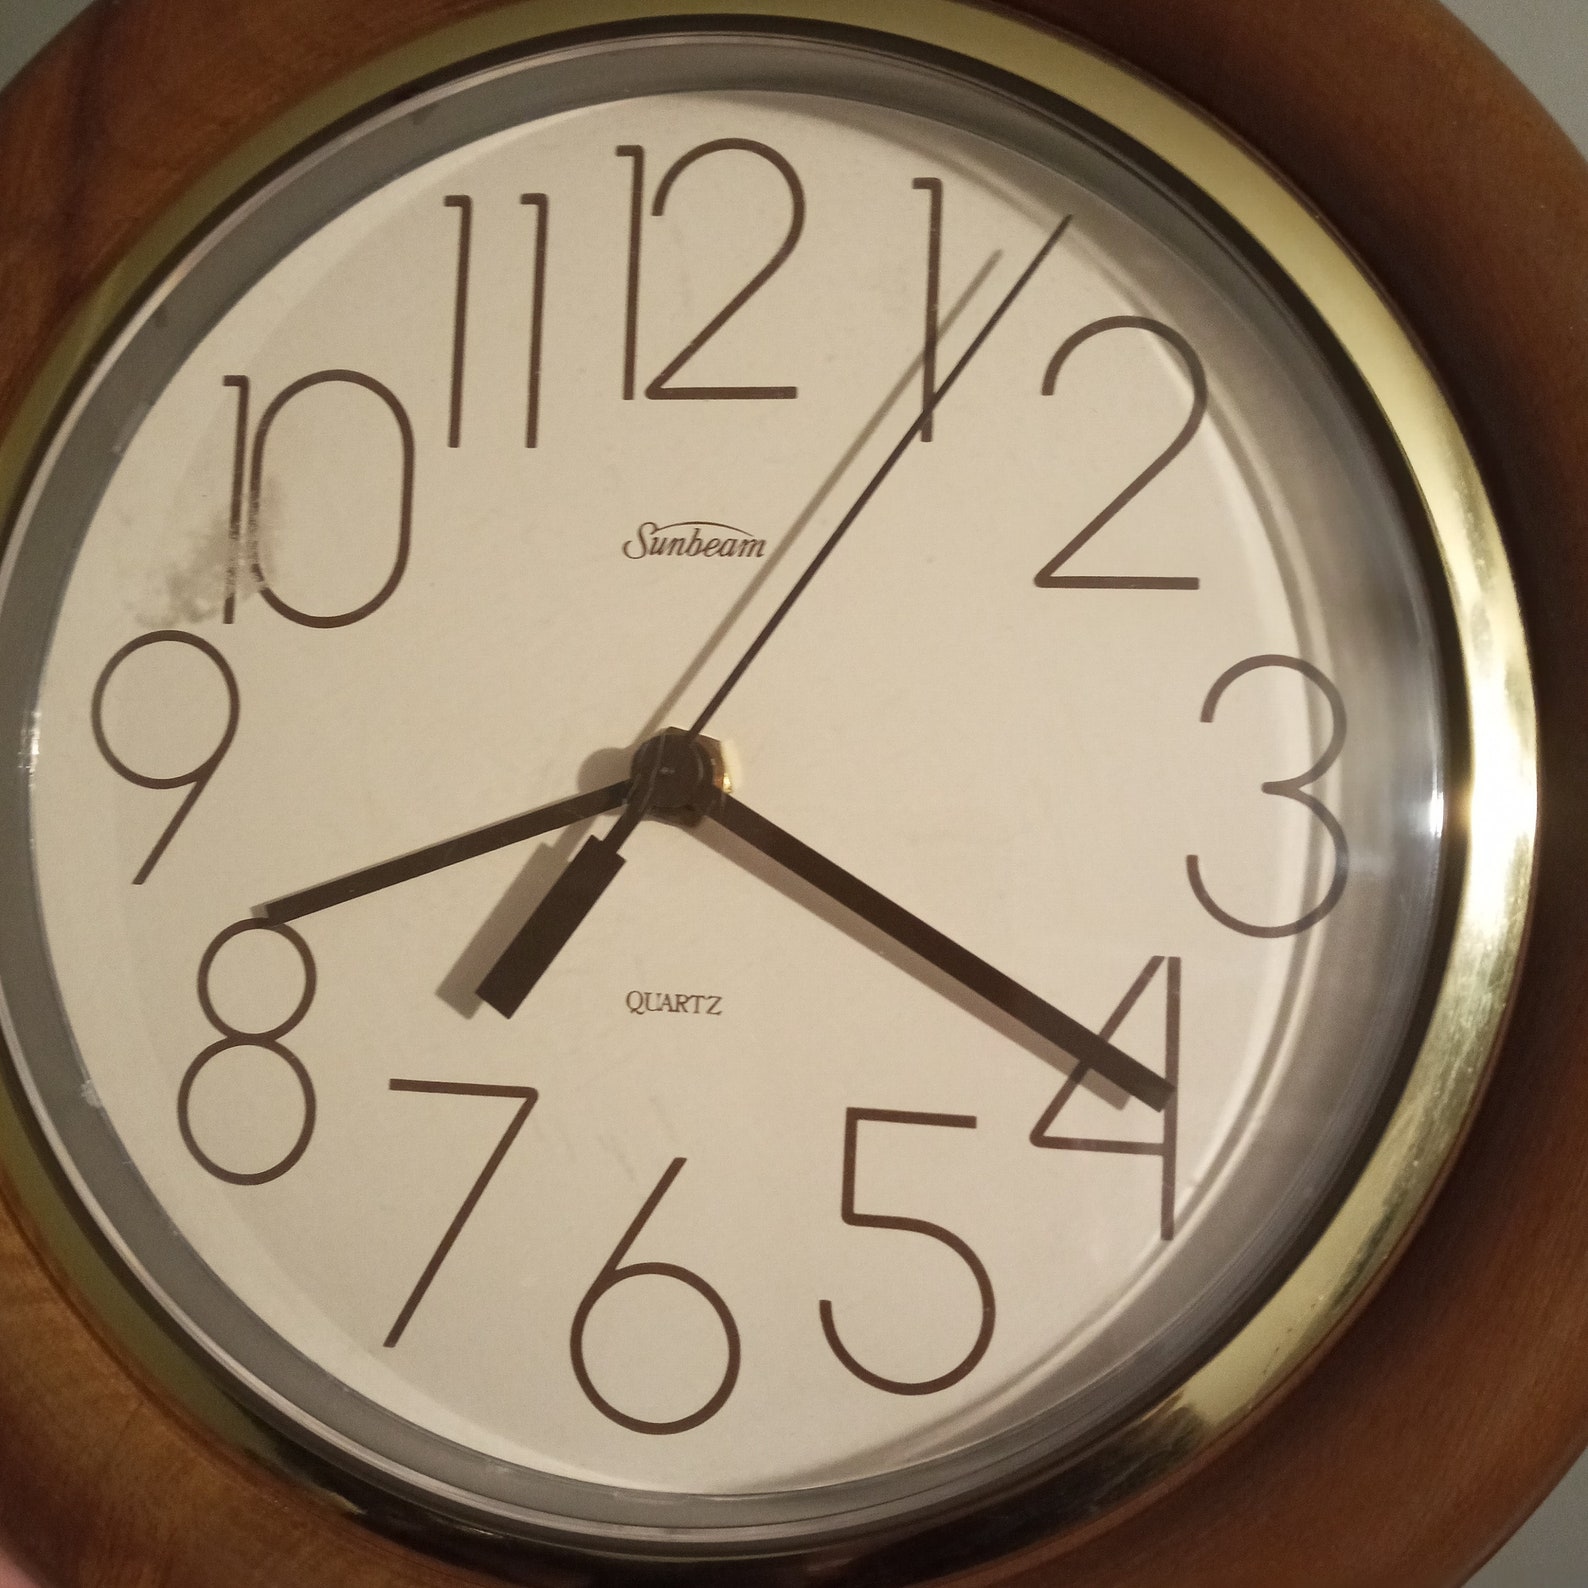 Vintage round wood wall clock Sunbeam 11 | Etsy